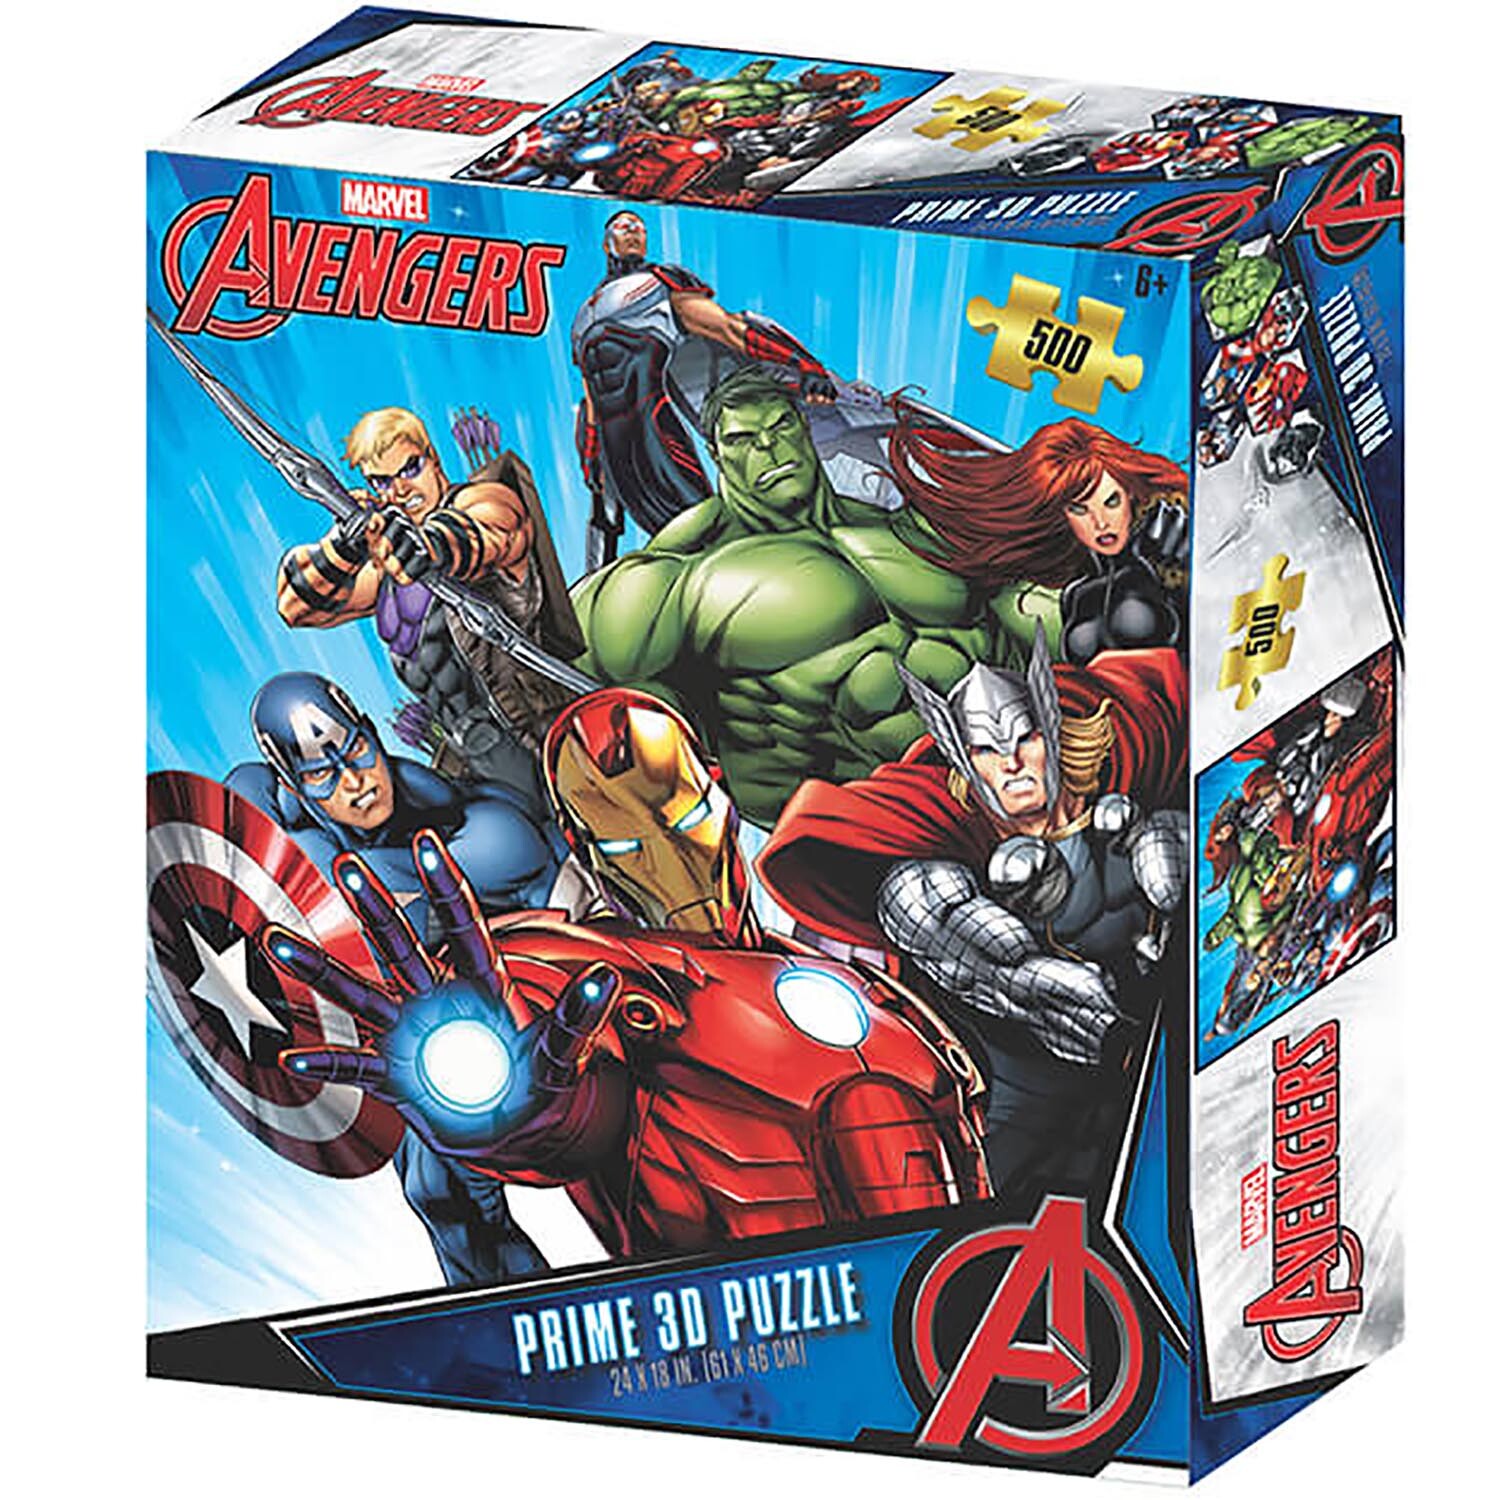 500-Piece Marvel Avengers Prime 3D Puzzle Image 1